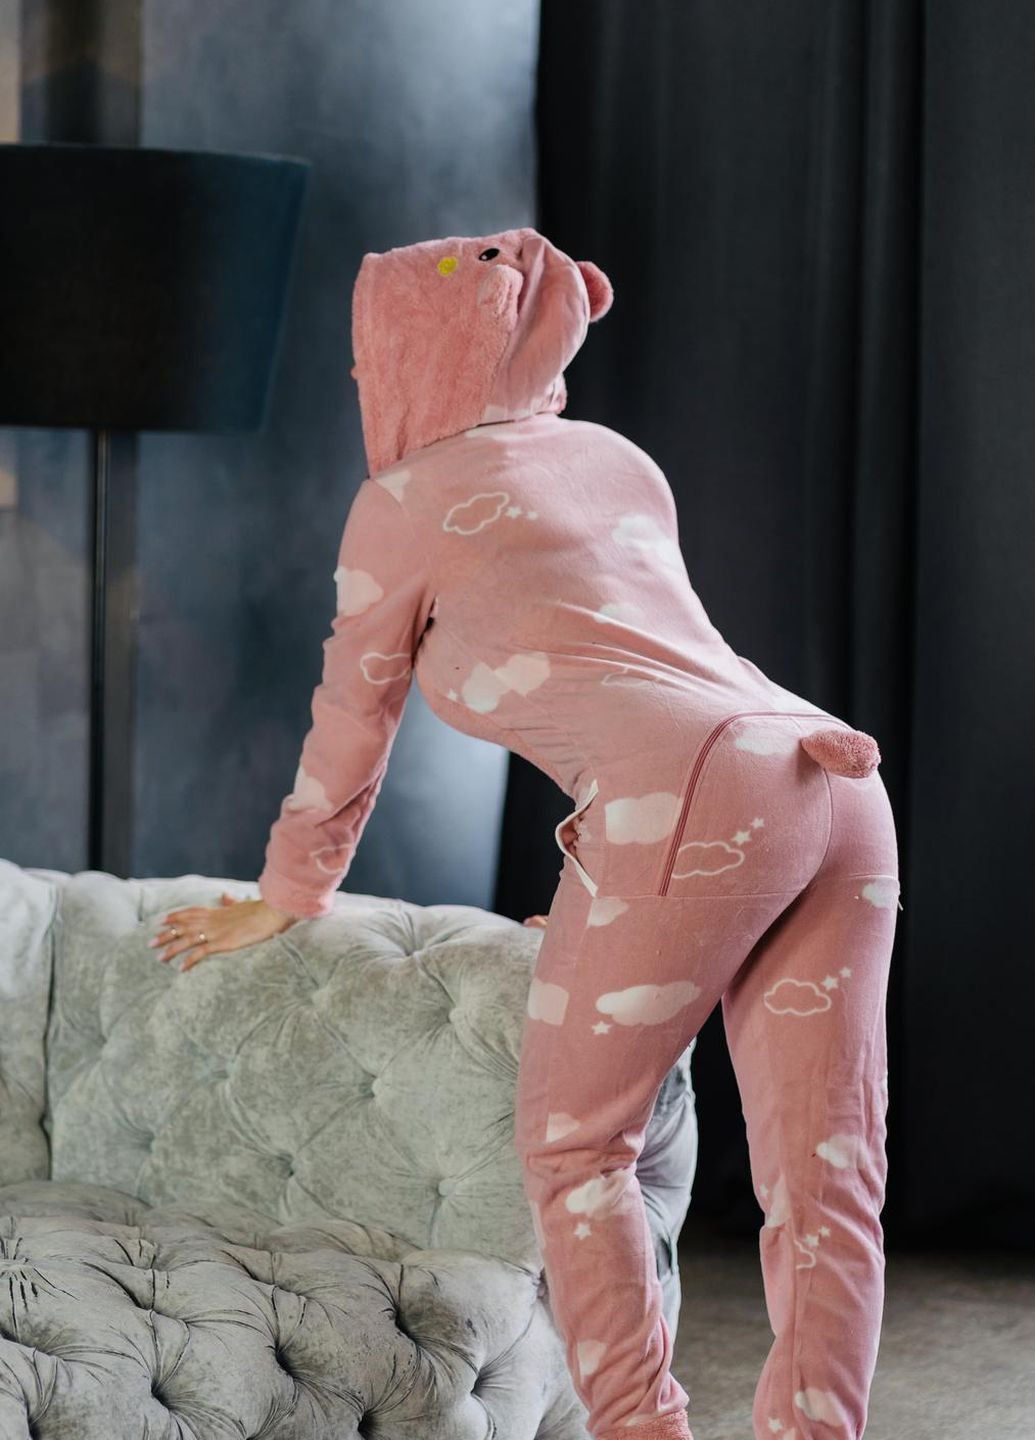 Темно-розовая зимняя пижама комбинезон Pijamoni Попожама хмаринка (комбінезон з карманом на попі, піджамоні) - кигурумі